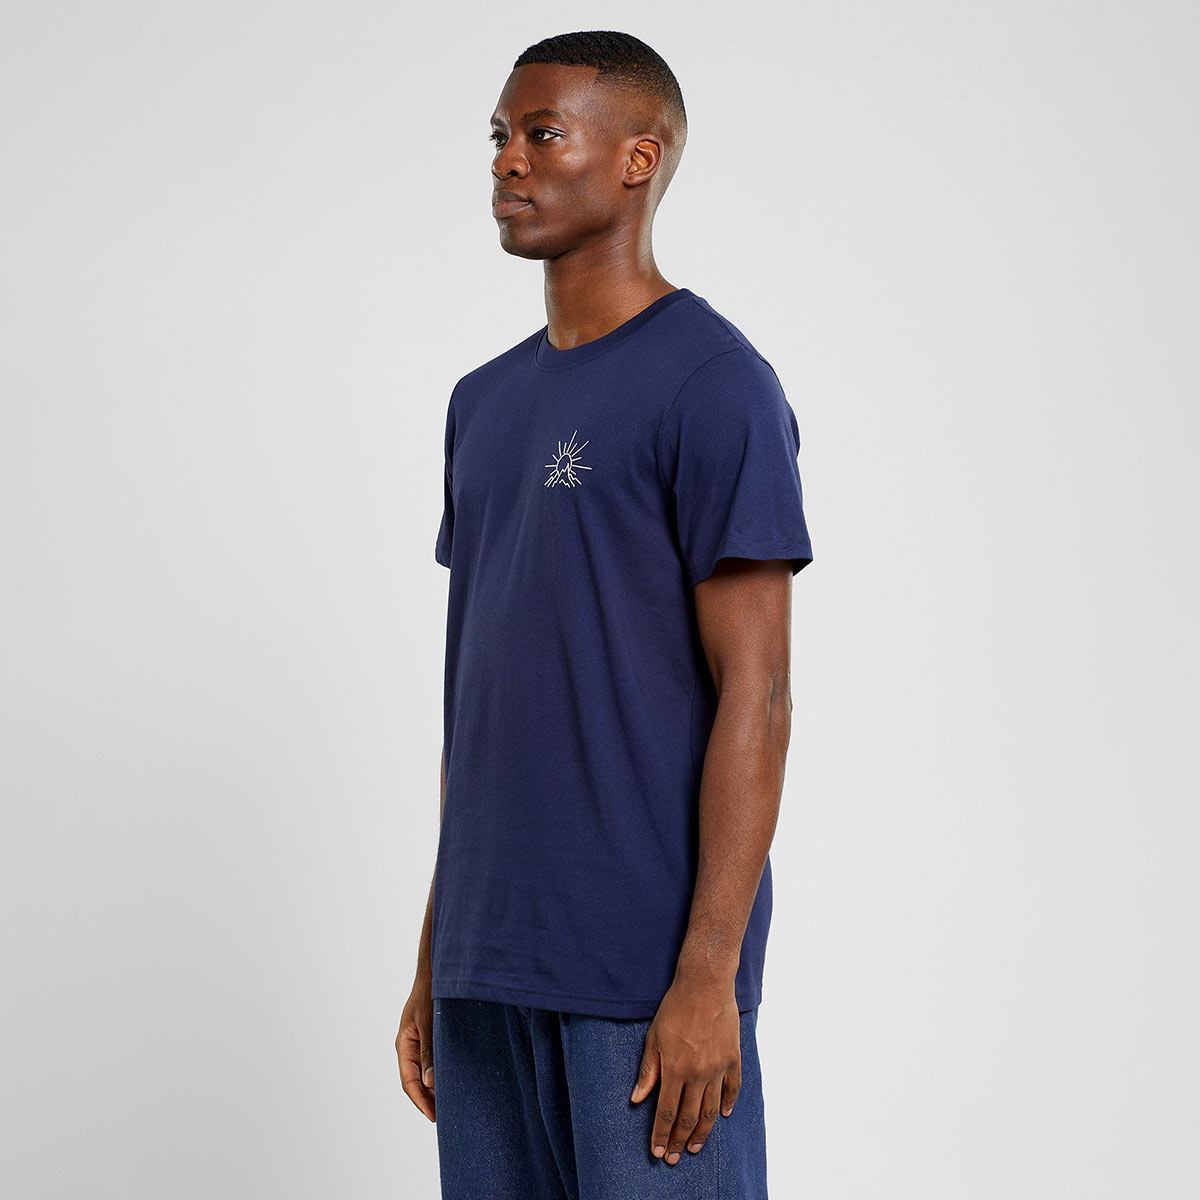 dunkelblaues T-Shirt von Dedicated Brand aus Bio-Baumwolle mit weißer Stickerei mit Berg und aufgehender Sonne Motiv auf der Brust.